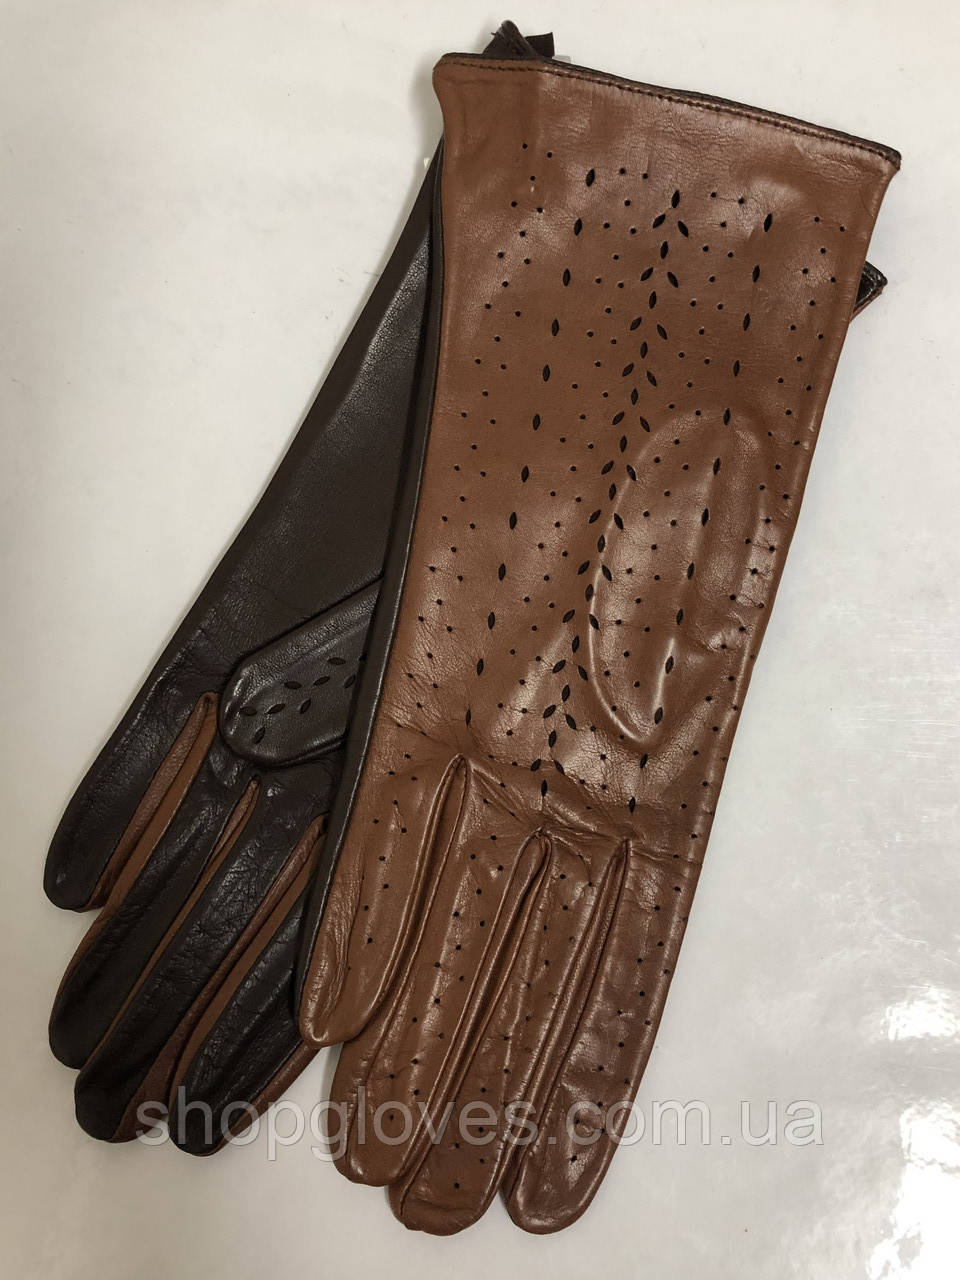 Жіночі шкіряні рукавички без підкладки з натуральної шкіри ягняти. Колір рудий з коричневим